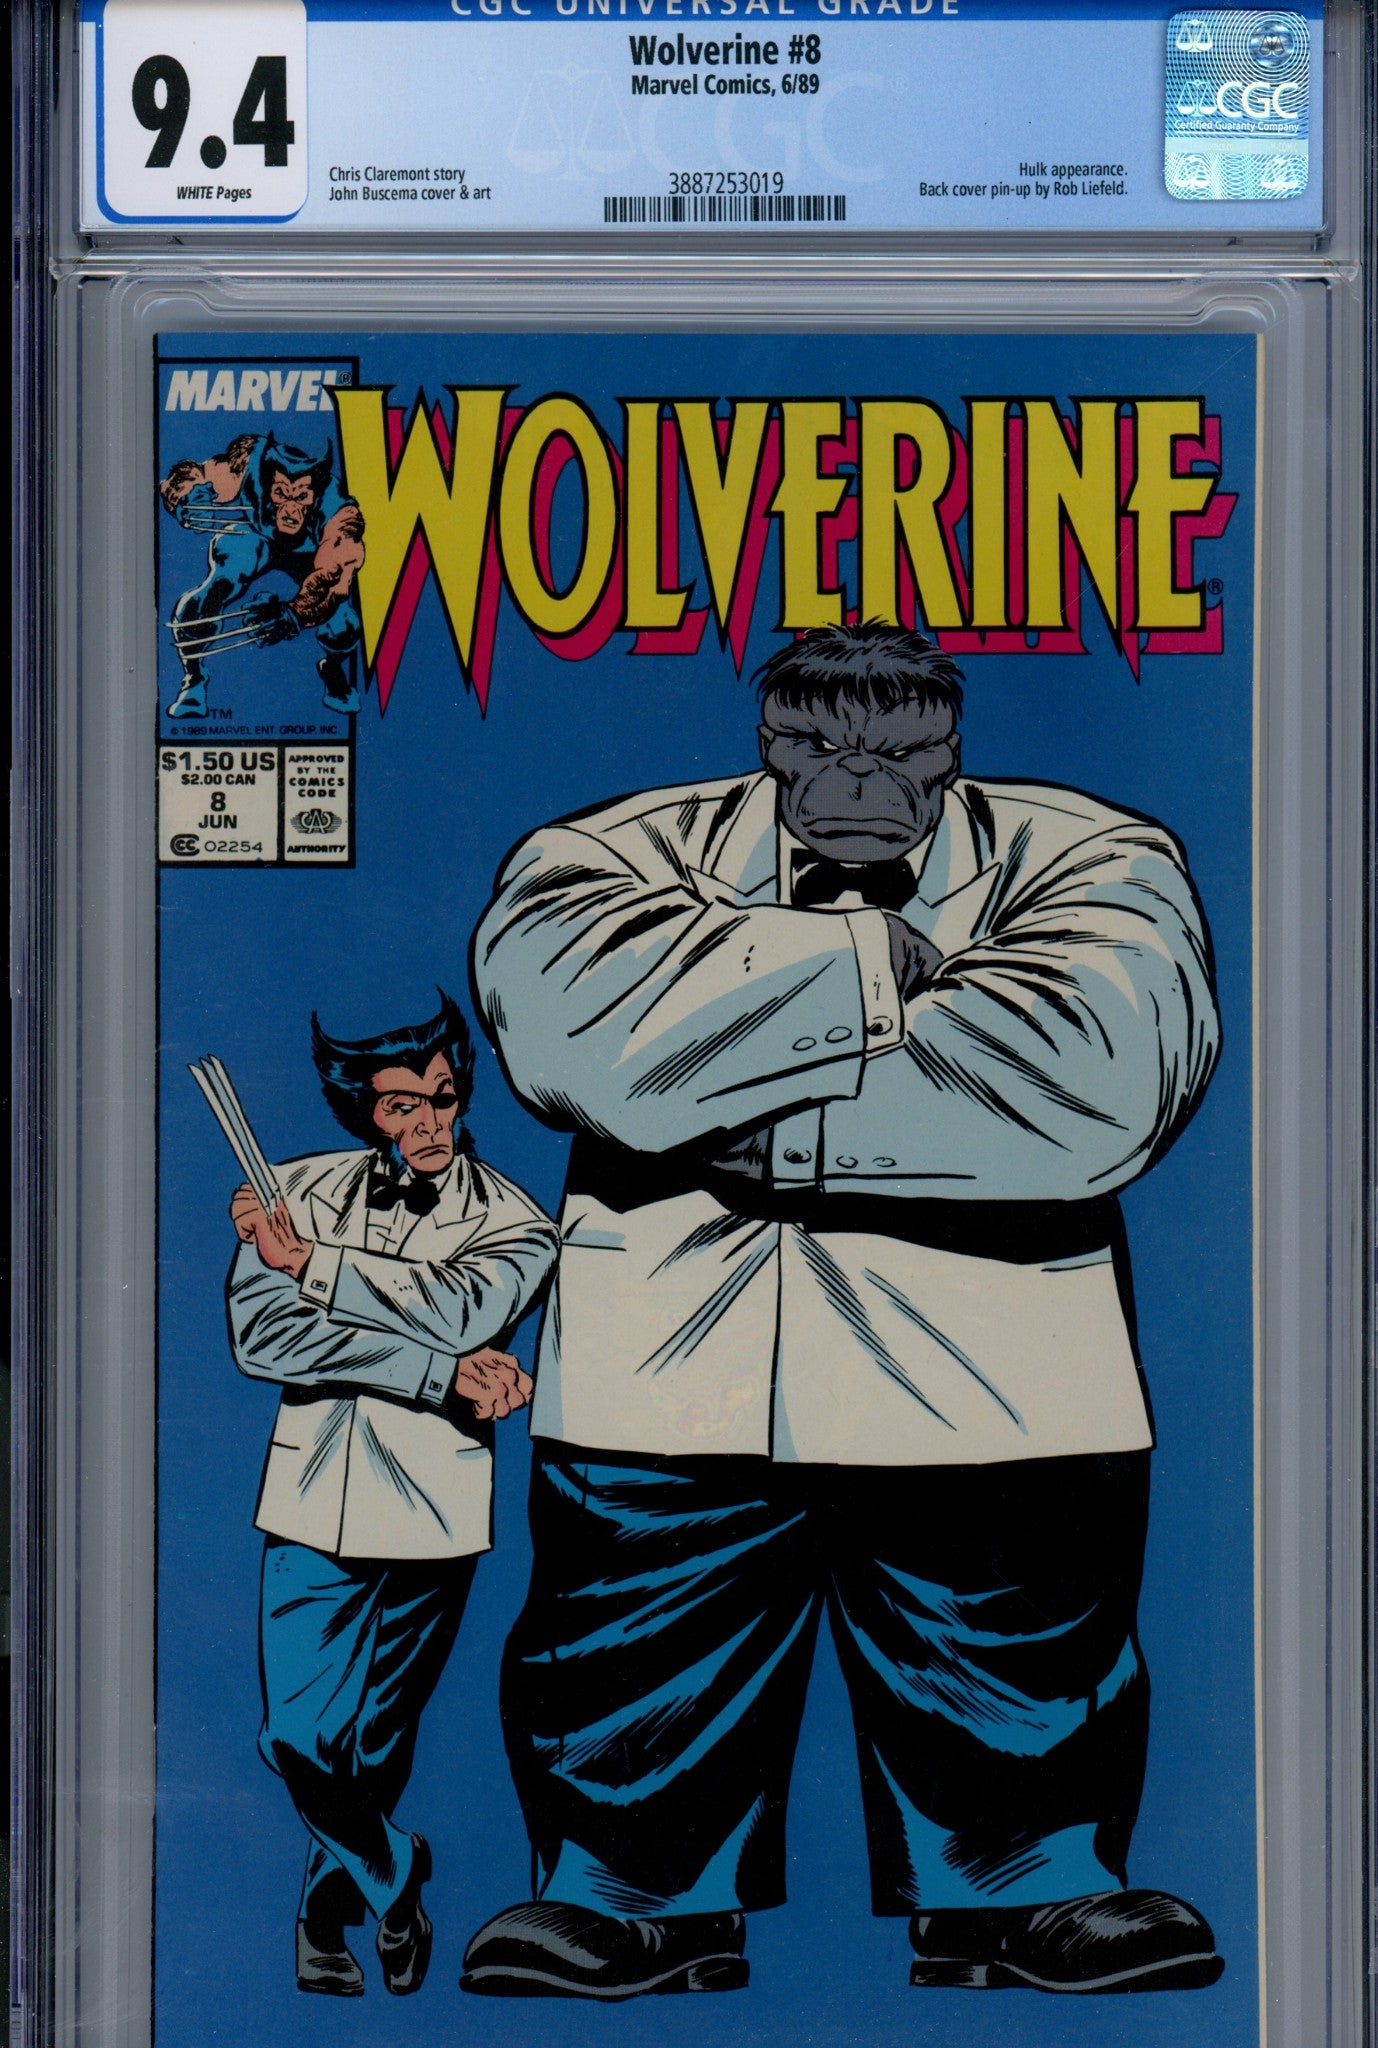 Wolverine Vol 2 8 CGC 9.4 (NM) (1989) Newsstand 